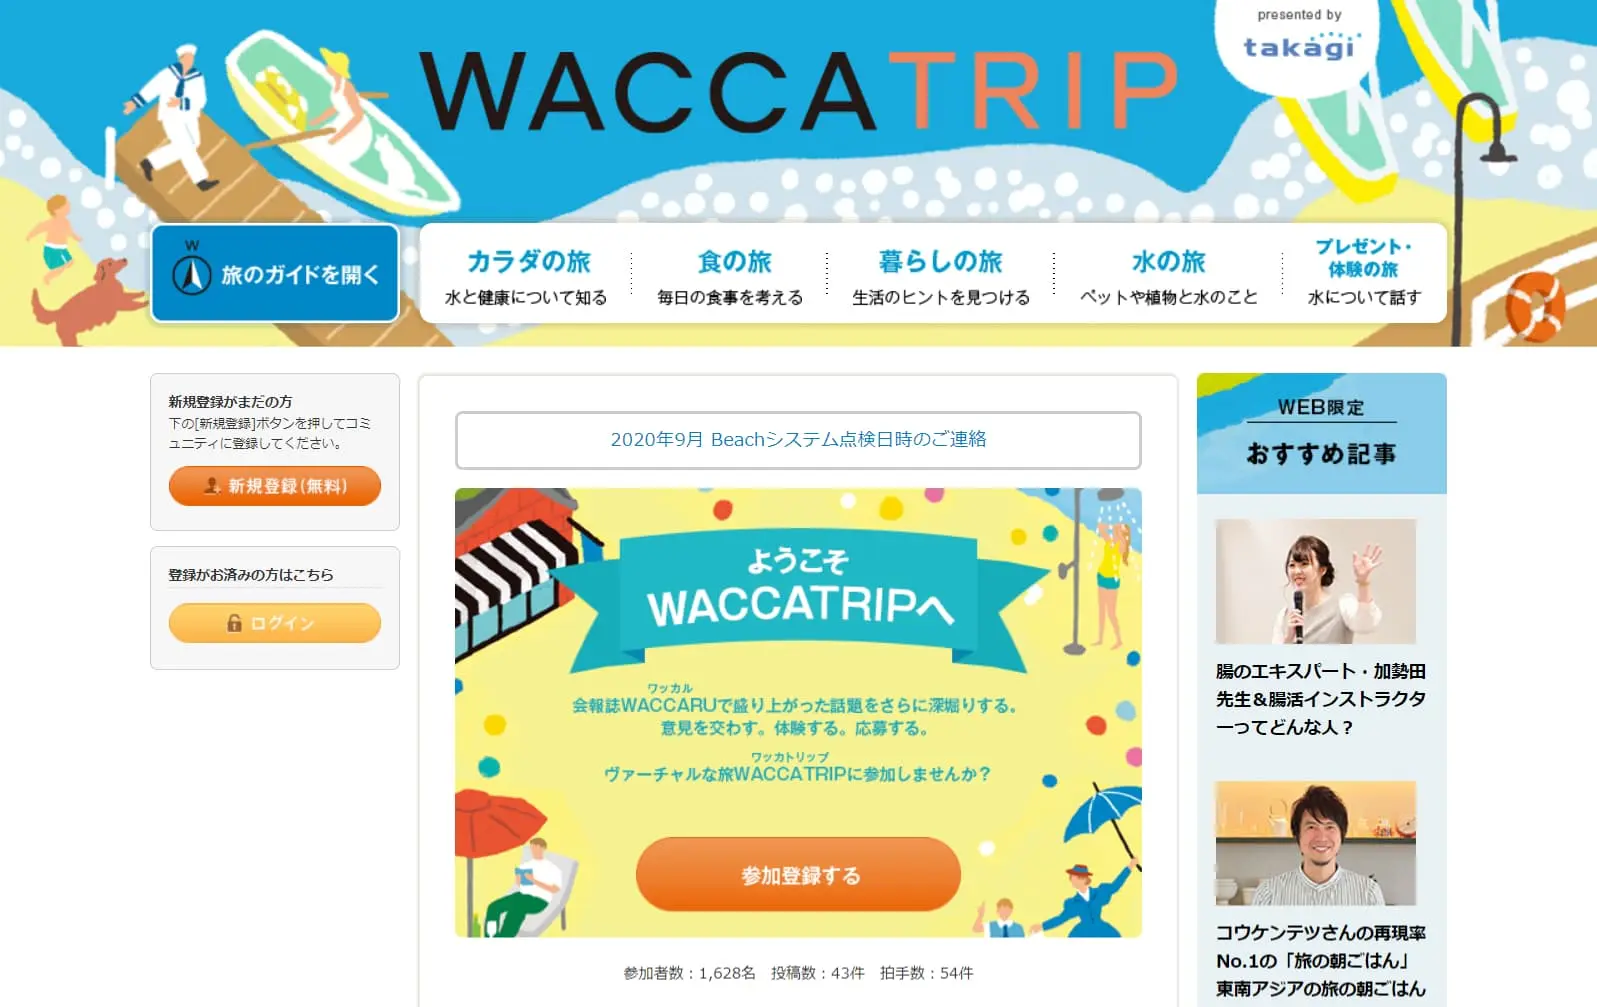 浄水器メーカー 株式会社タカギ様（本社：福岡県北九州市）のWebコミュニティ「WACCCATRIP」の制作を支援